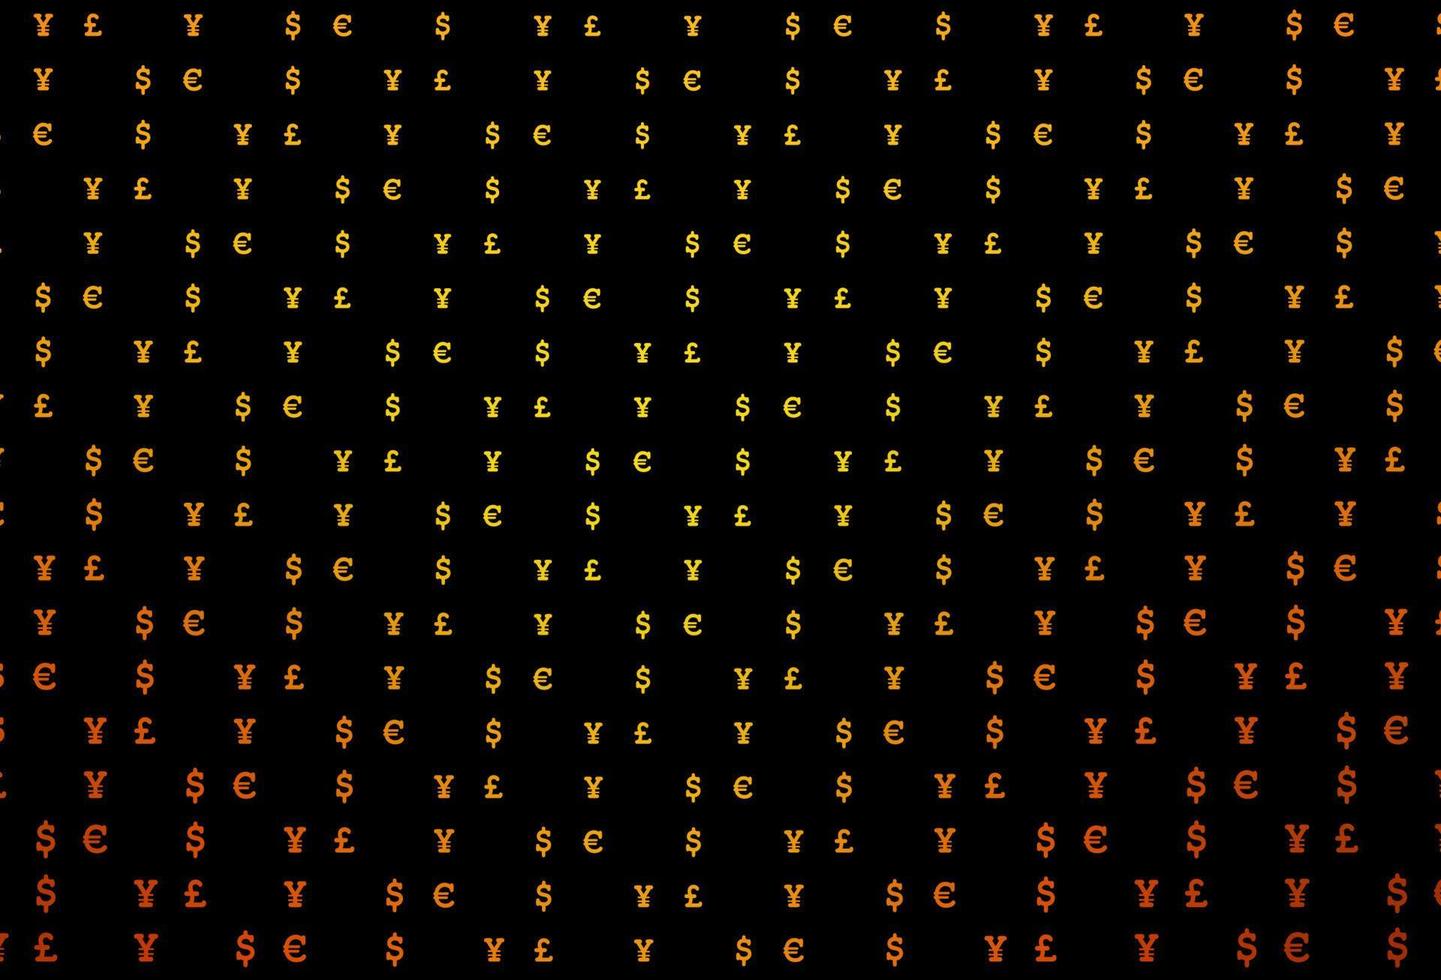 textura de vetor laranja escuro com símbolos financeiros.